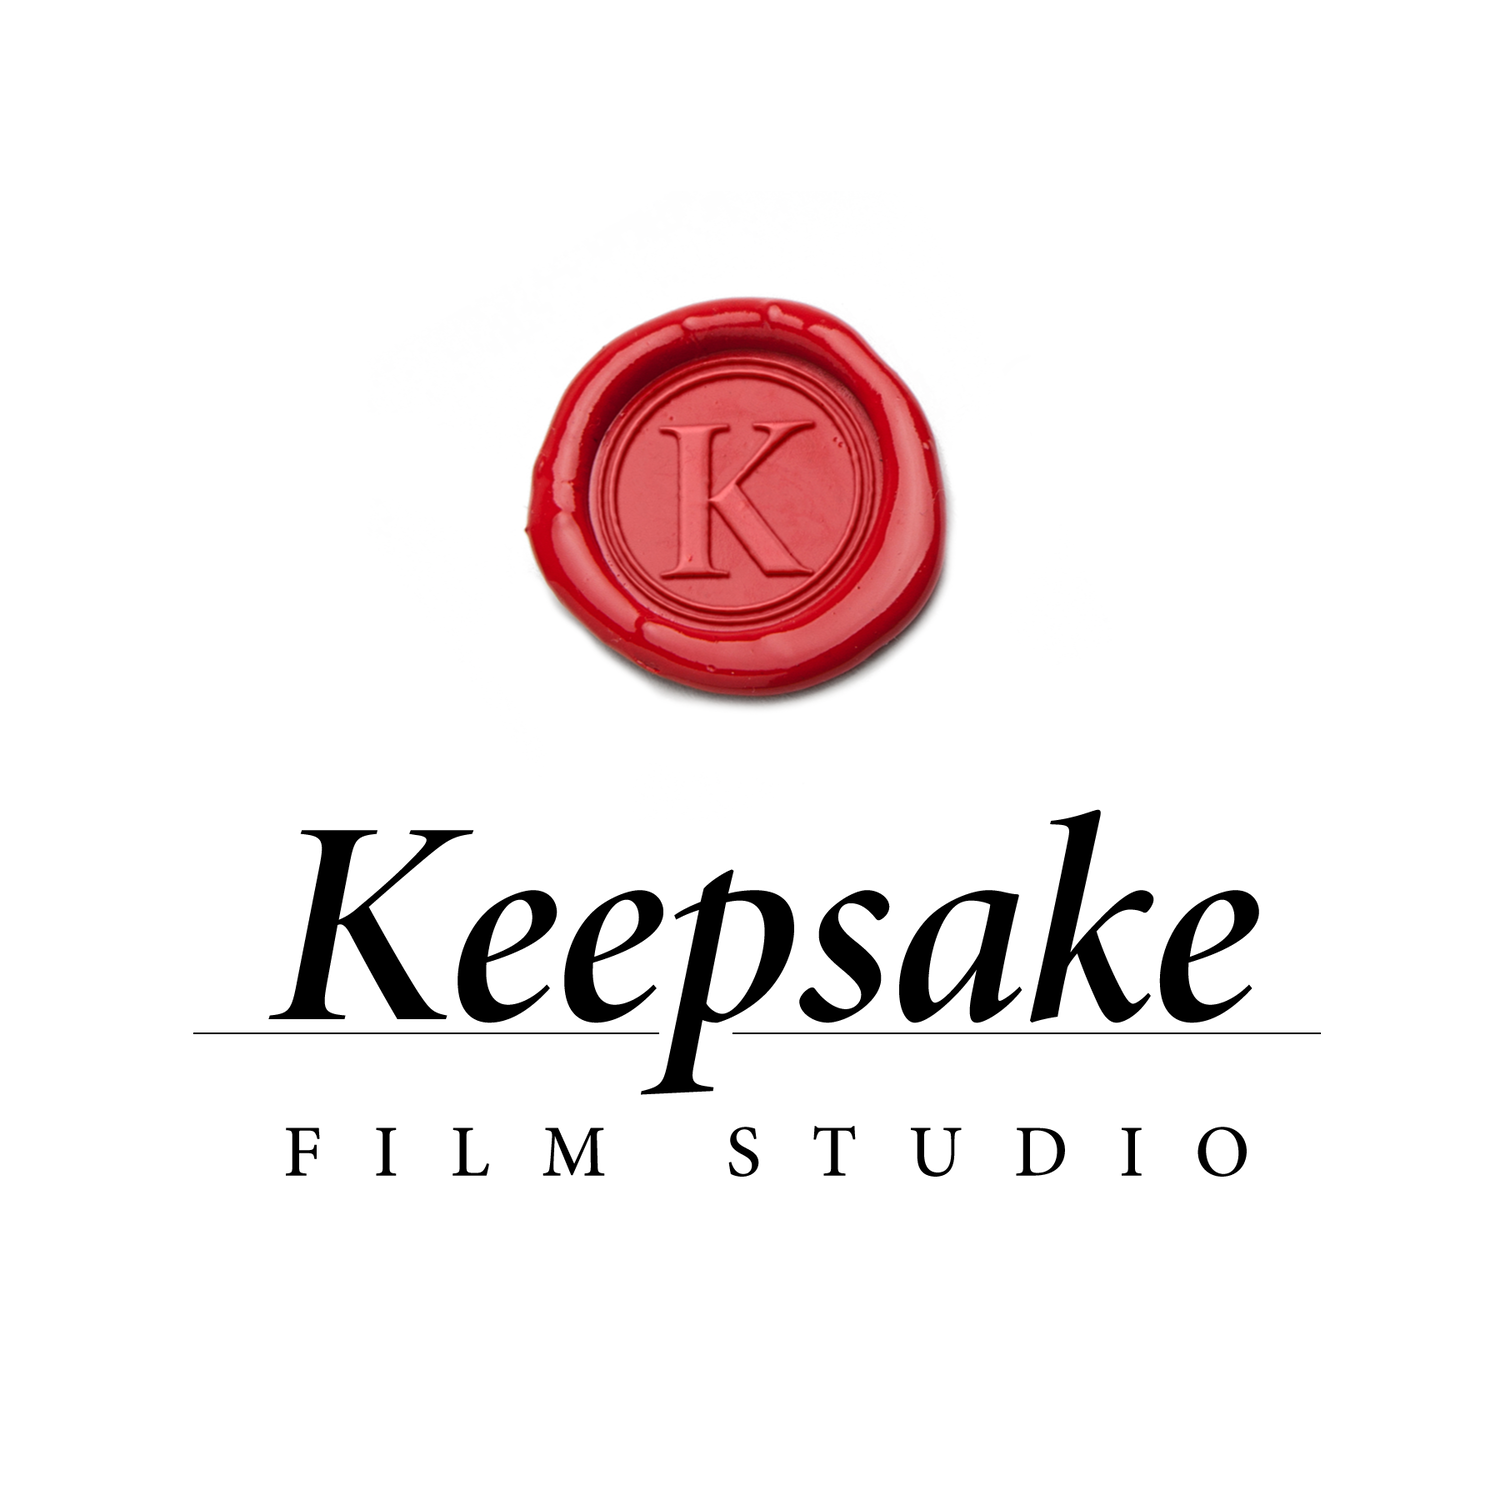 KEEPSAKE FILM STUDIO